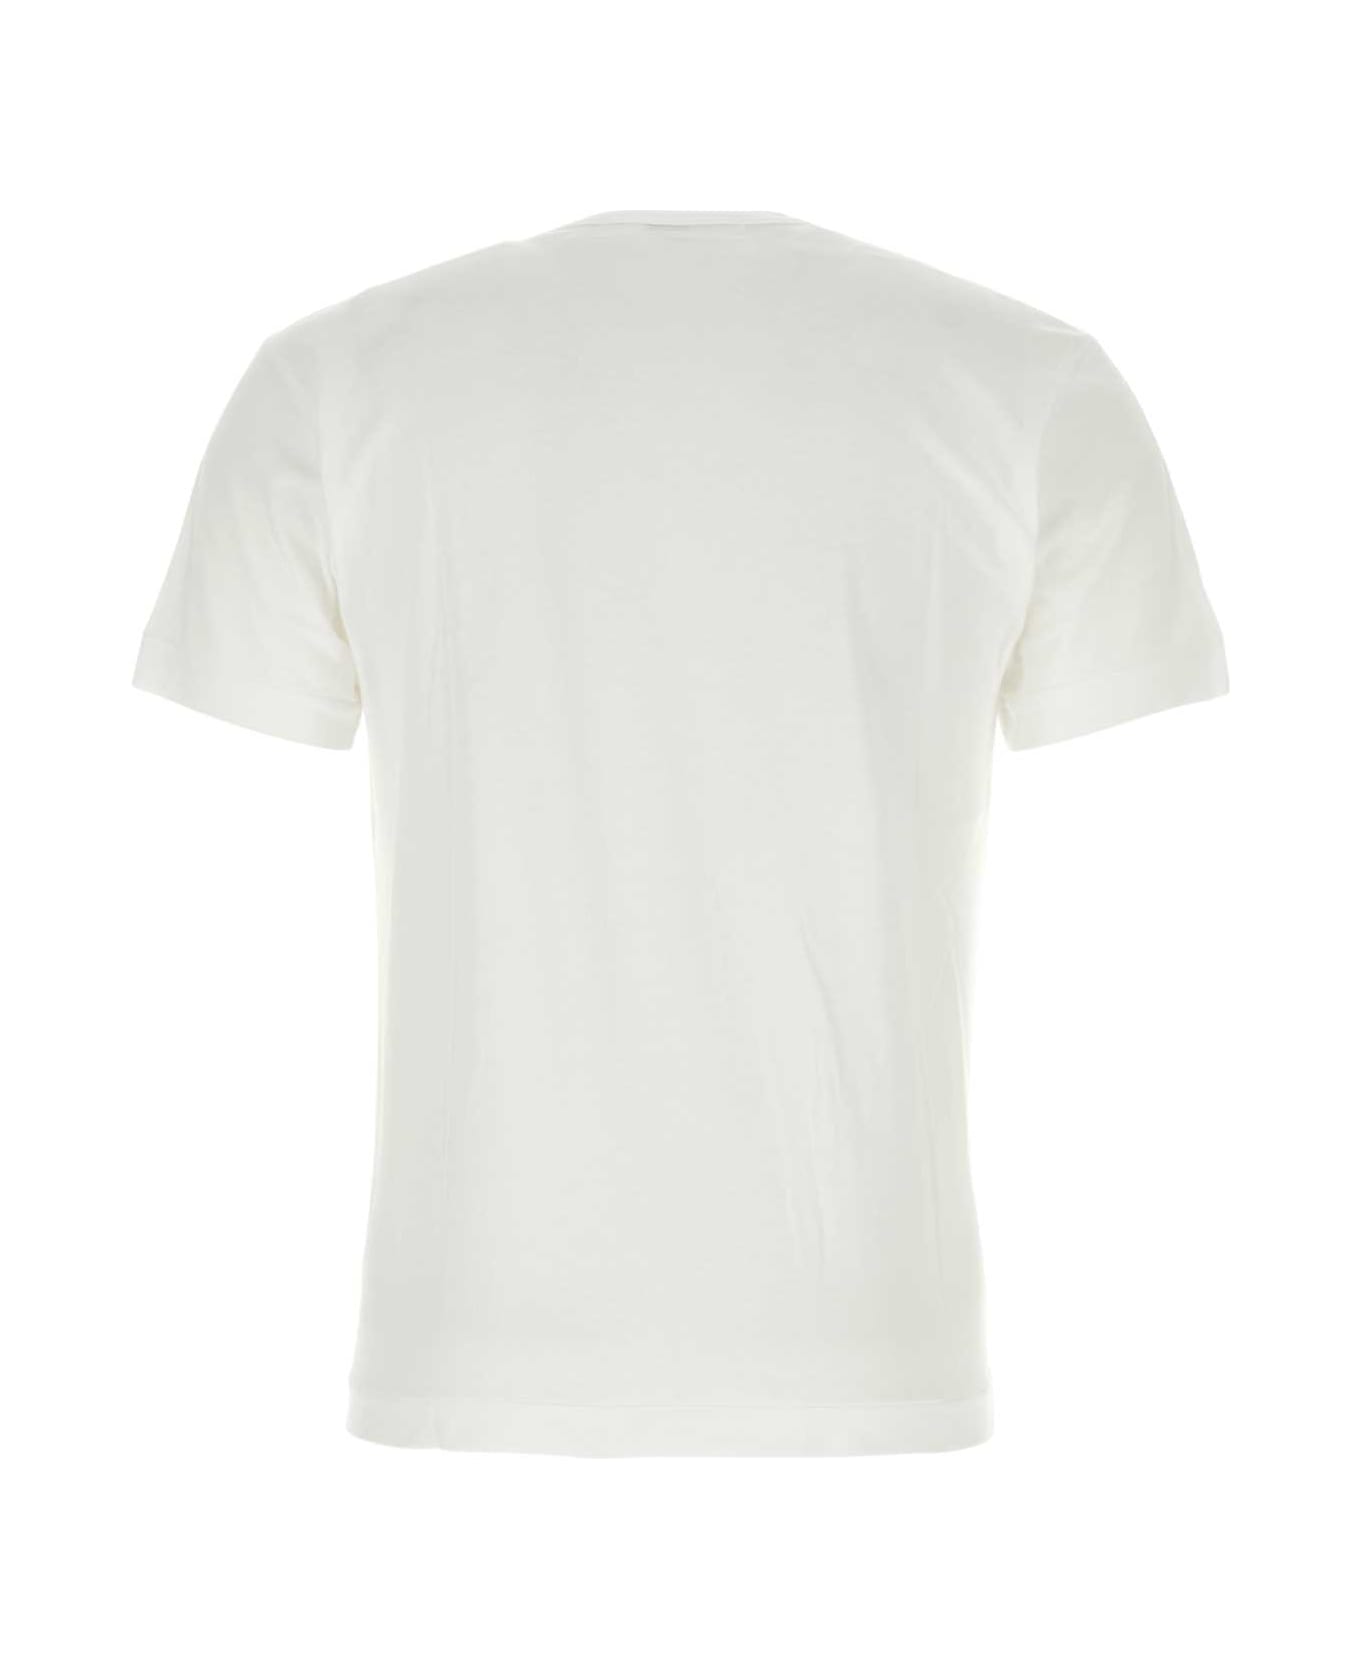 Comme des Garçons Play White Cotton T-shirt - WHITE